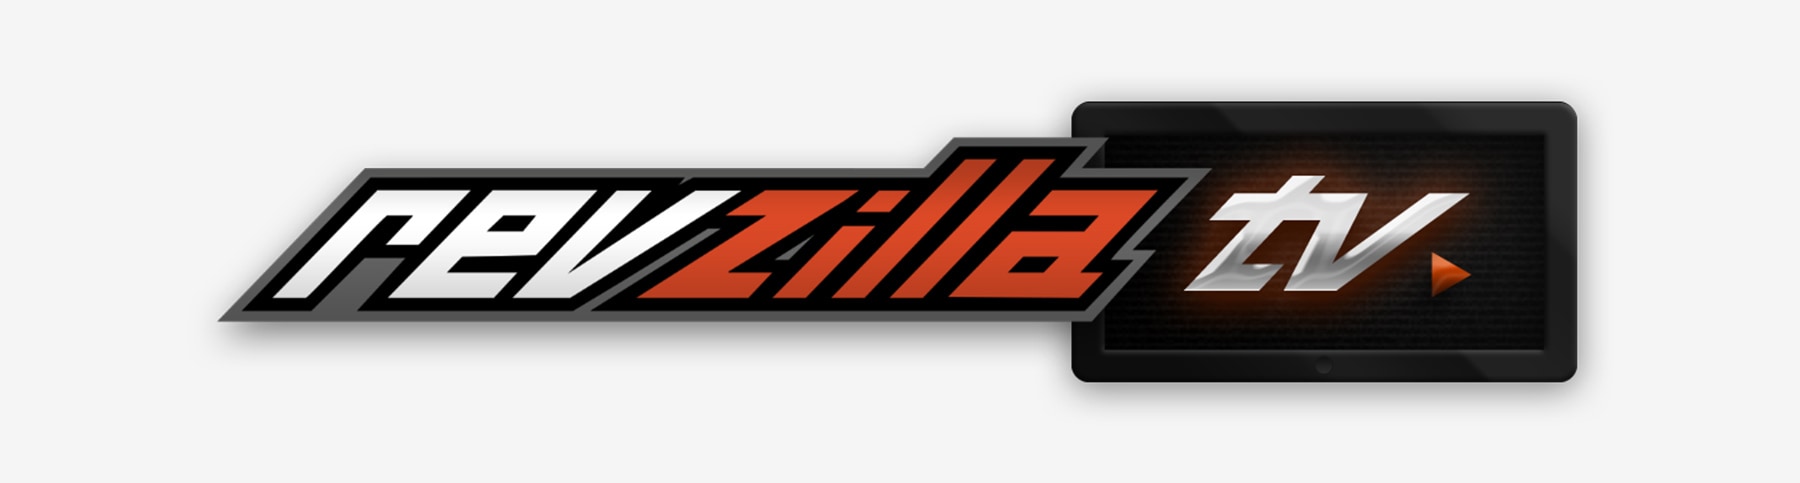 01 RevZilla TV Logo.jpg